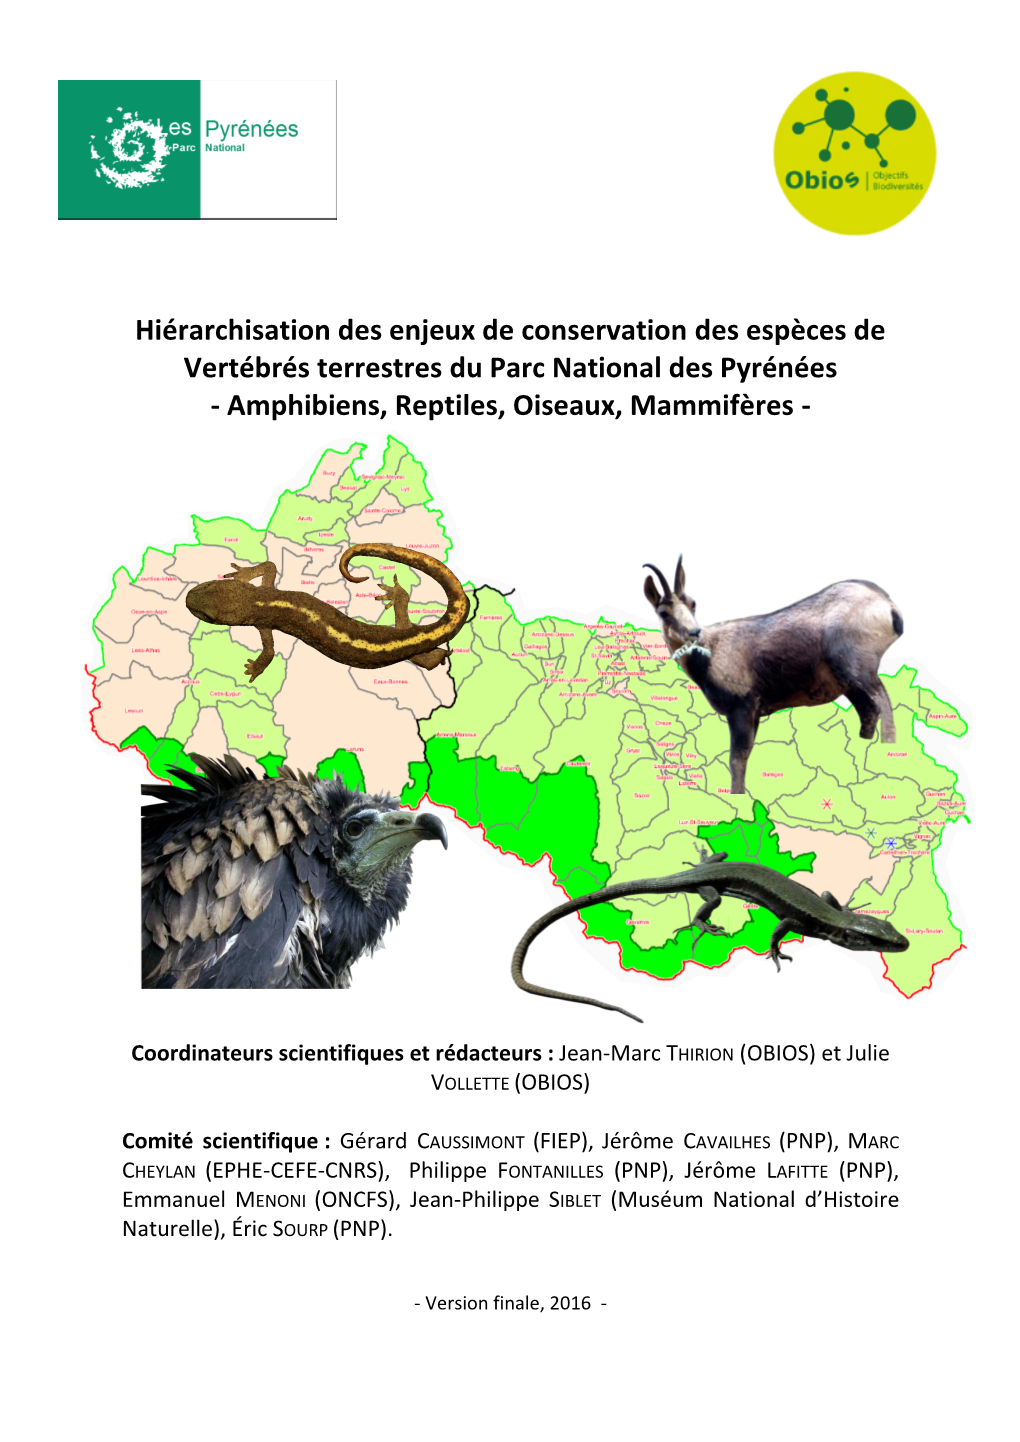 Hiérarchisation Des Enjeux De Conservation Des Espèces De Vertébrés Terrestres Du Parc National Des Pyrénées - Amphibiens, Reptiles, Oiseaux, Mammifères